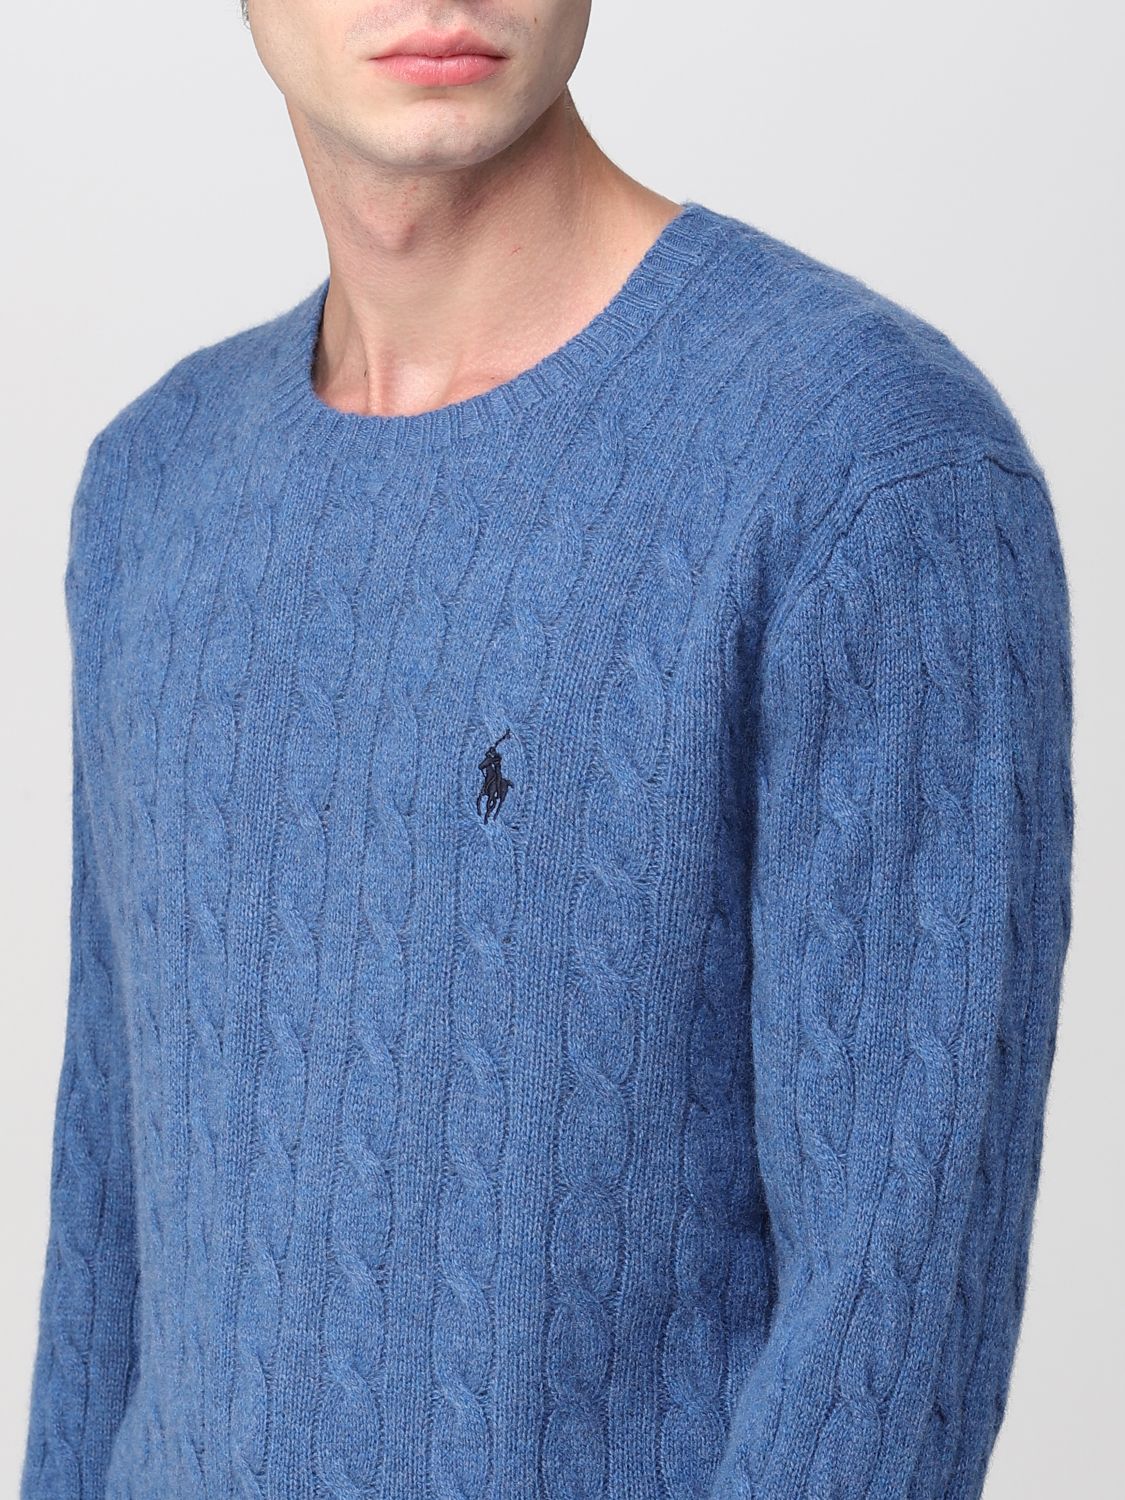 POLO RALPH LAUREN: sweater for man - Navy | Polo Ralph Lauren sweater ...